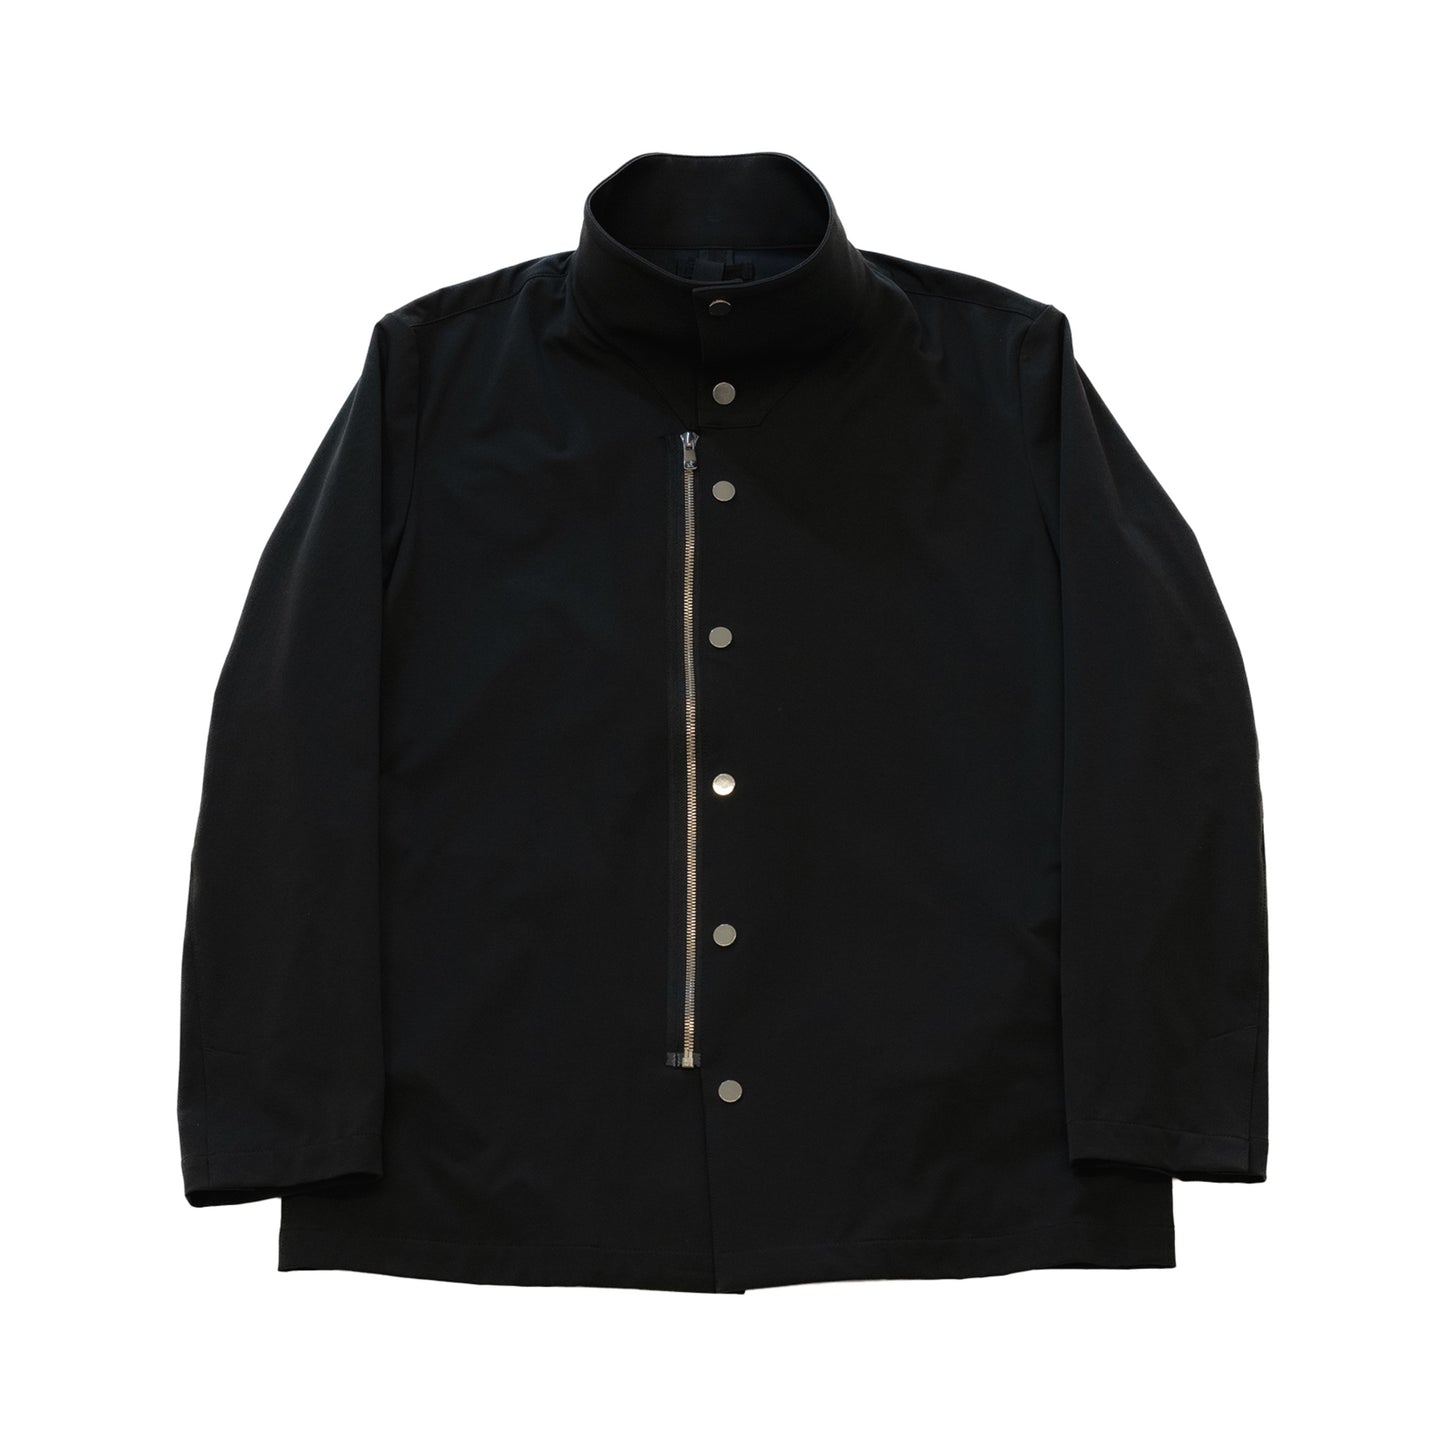 Schoeller Dryskin Technical jacket1.0